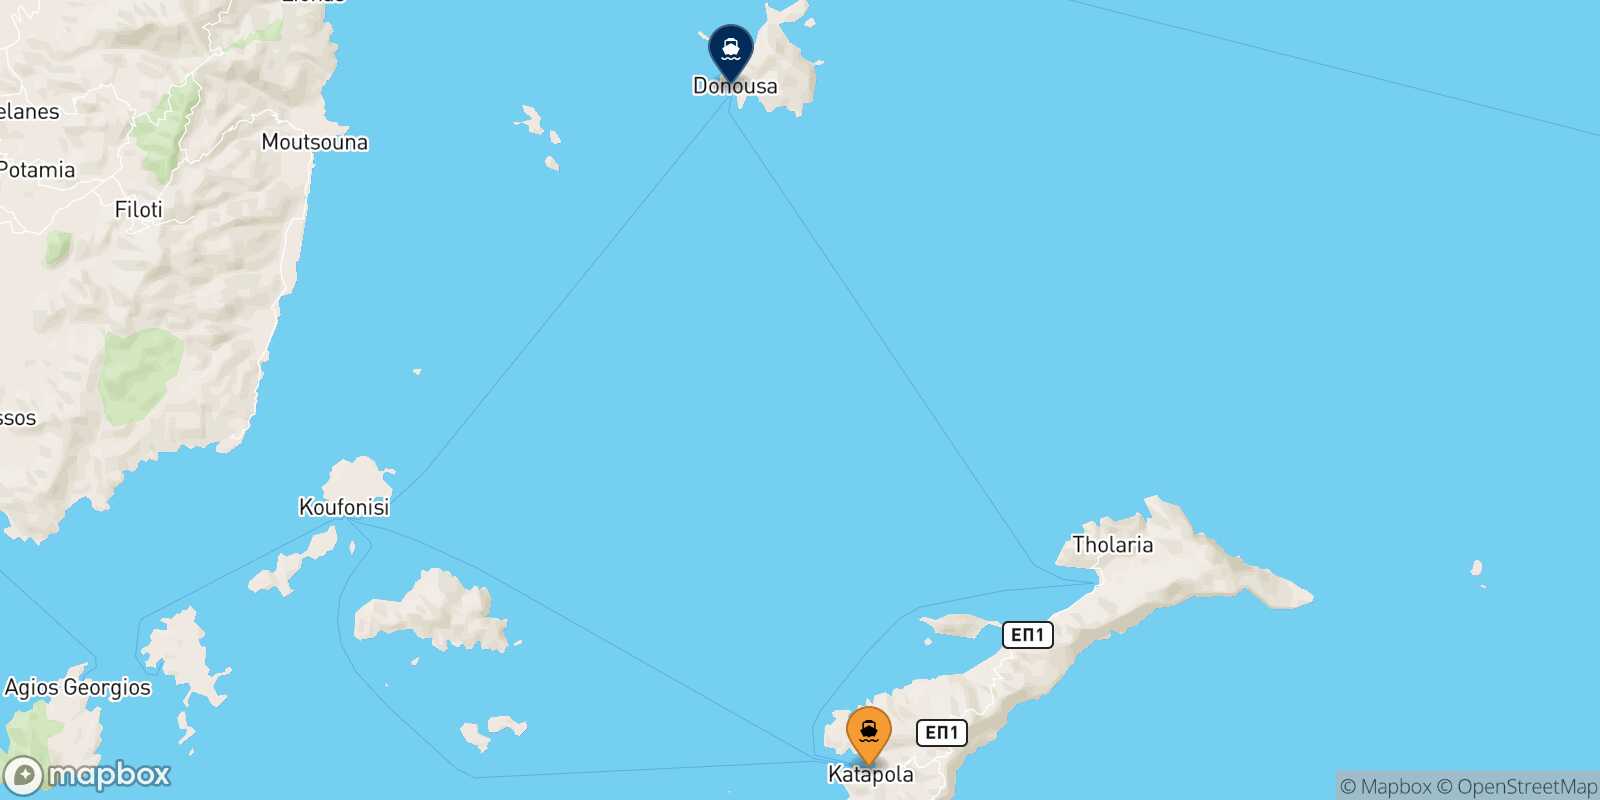 Katapola (Amorgos) Donoussa route map